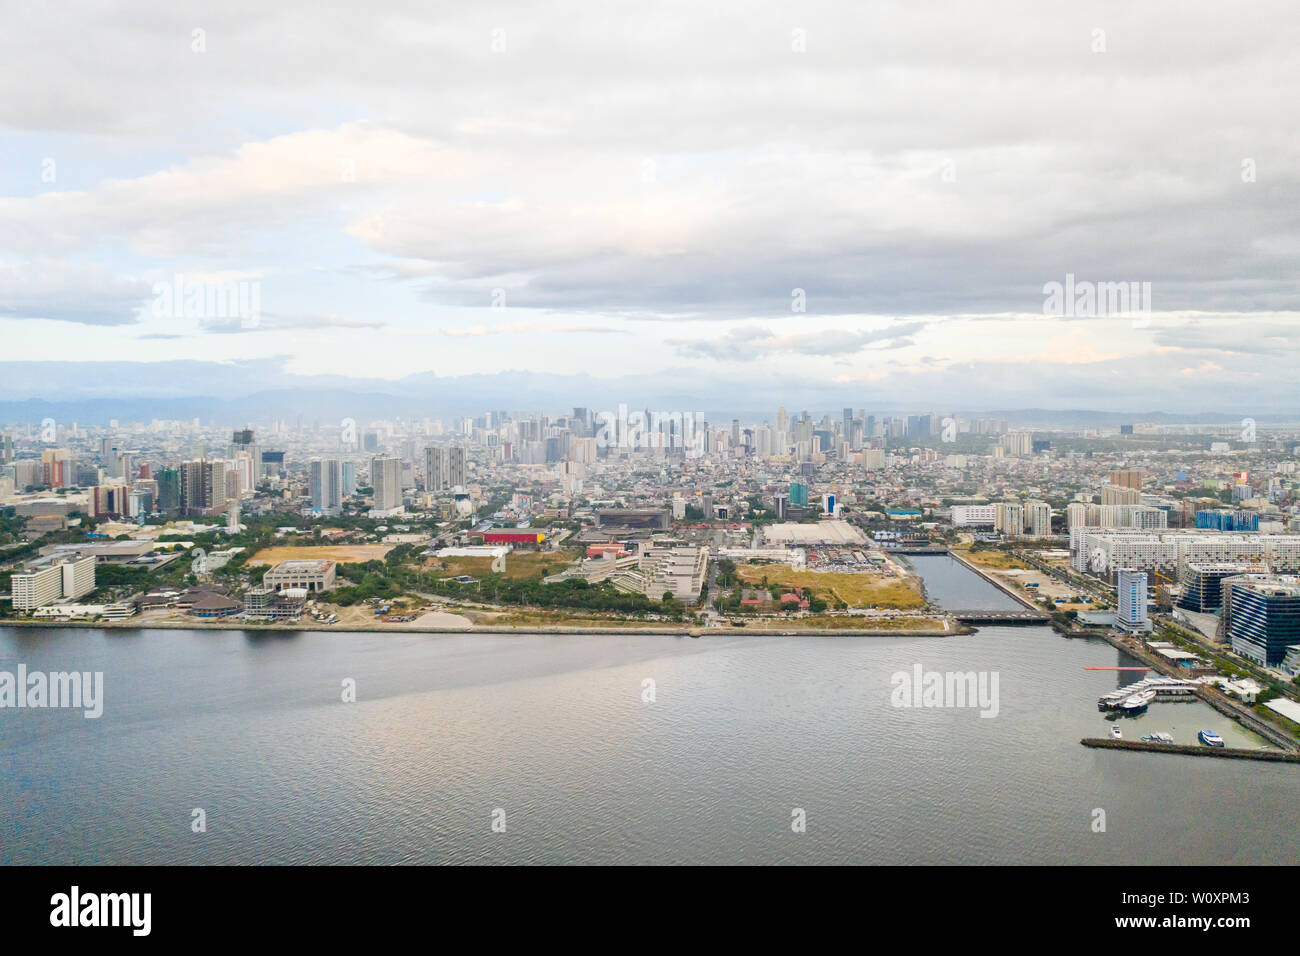 La città di Manila al mattino, vista da sopra. Panorama di una grande città portuale. Città con moderni edifici e grattacieli. A Manila, capitale delle Filippine. Metropoli asiatica. Foto Stock